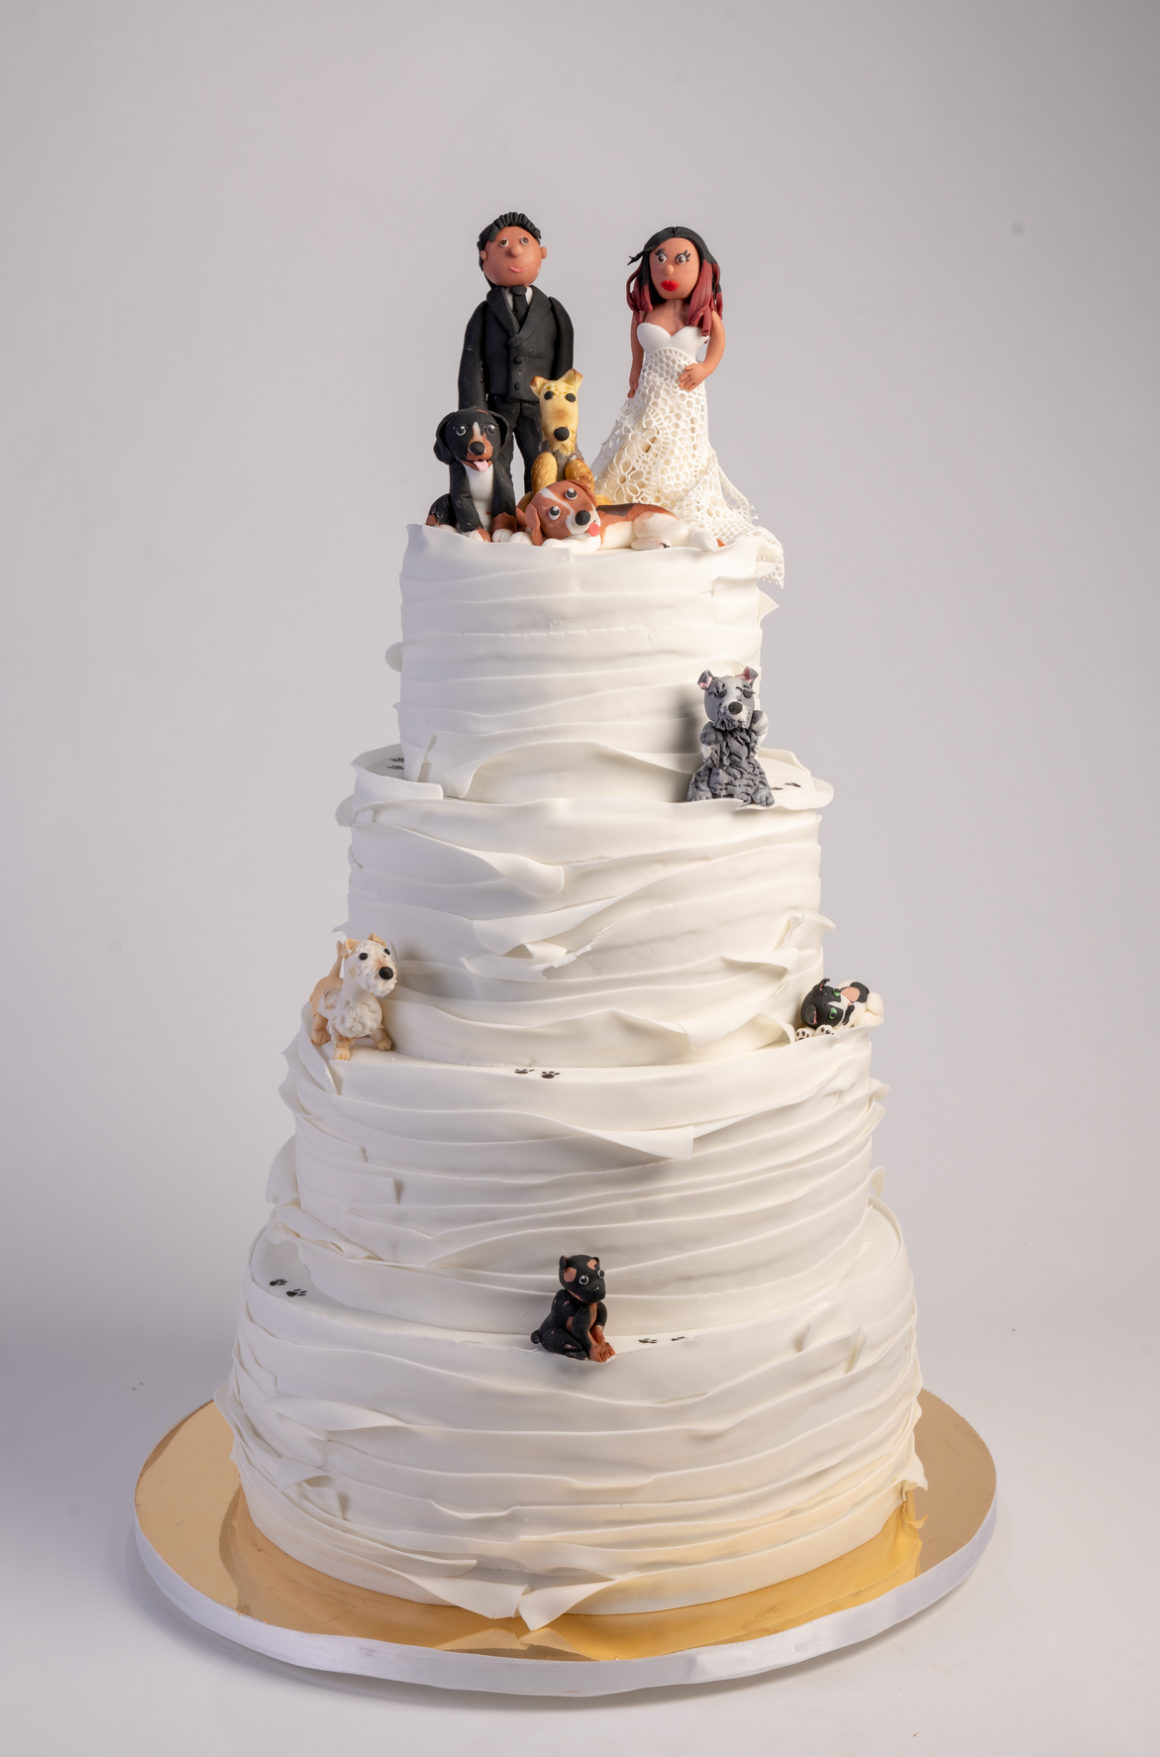 Ya tienes pastel para tu boda? Conoce Let them have cake -TWB